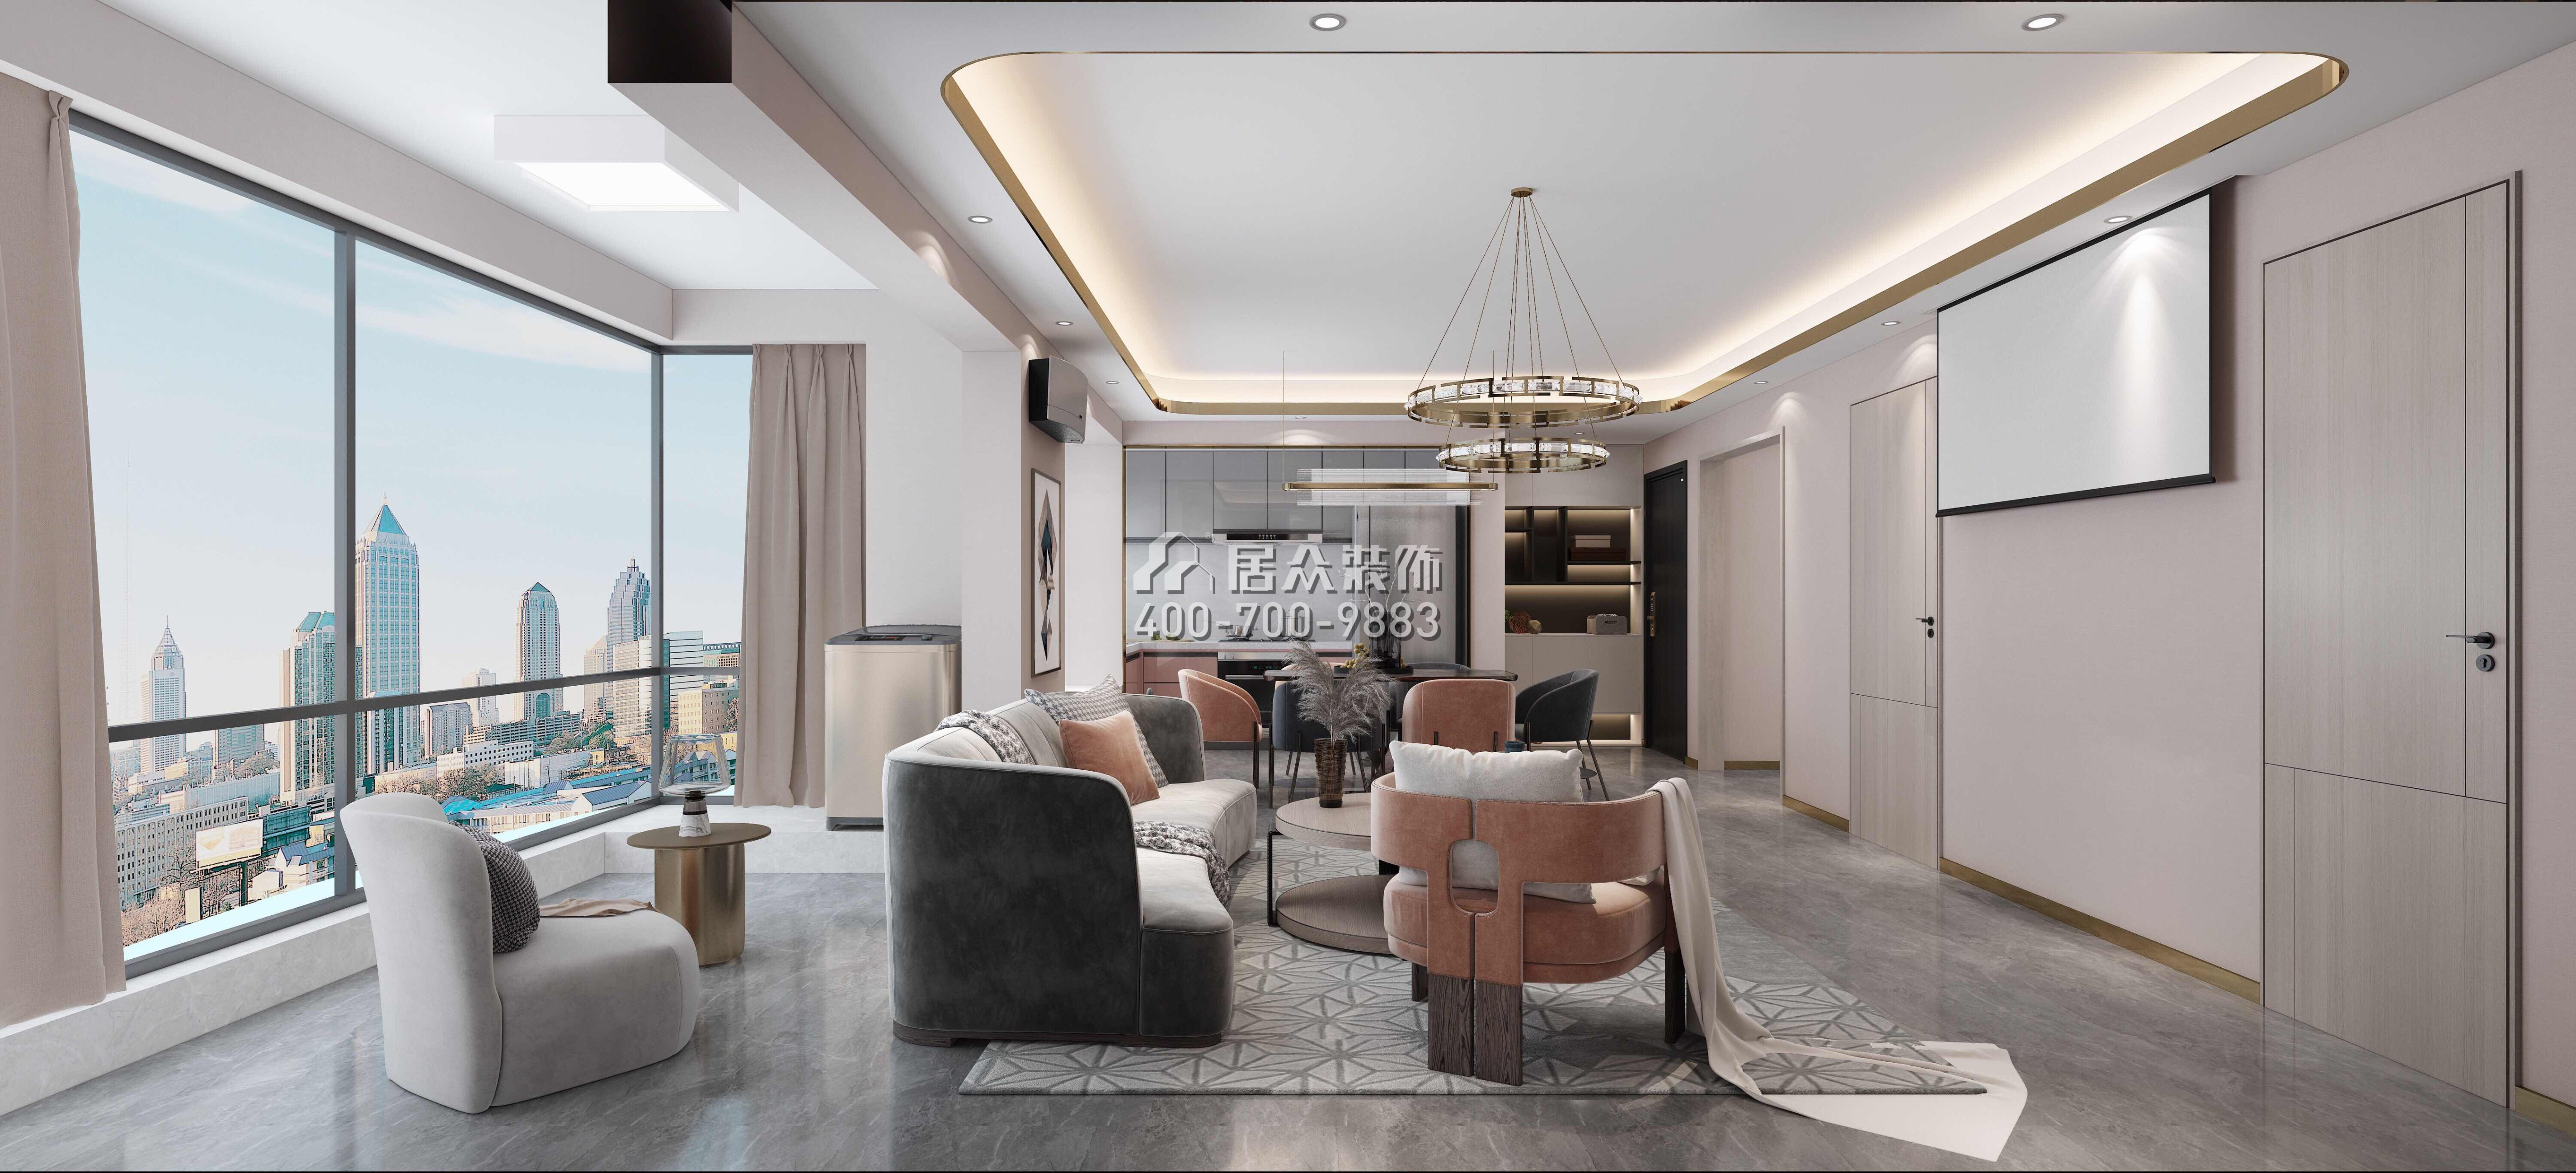 東關樂尚林居110平方米現代簡約風格平層戶型客廳裝修效果圖